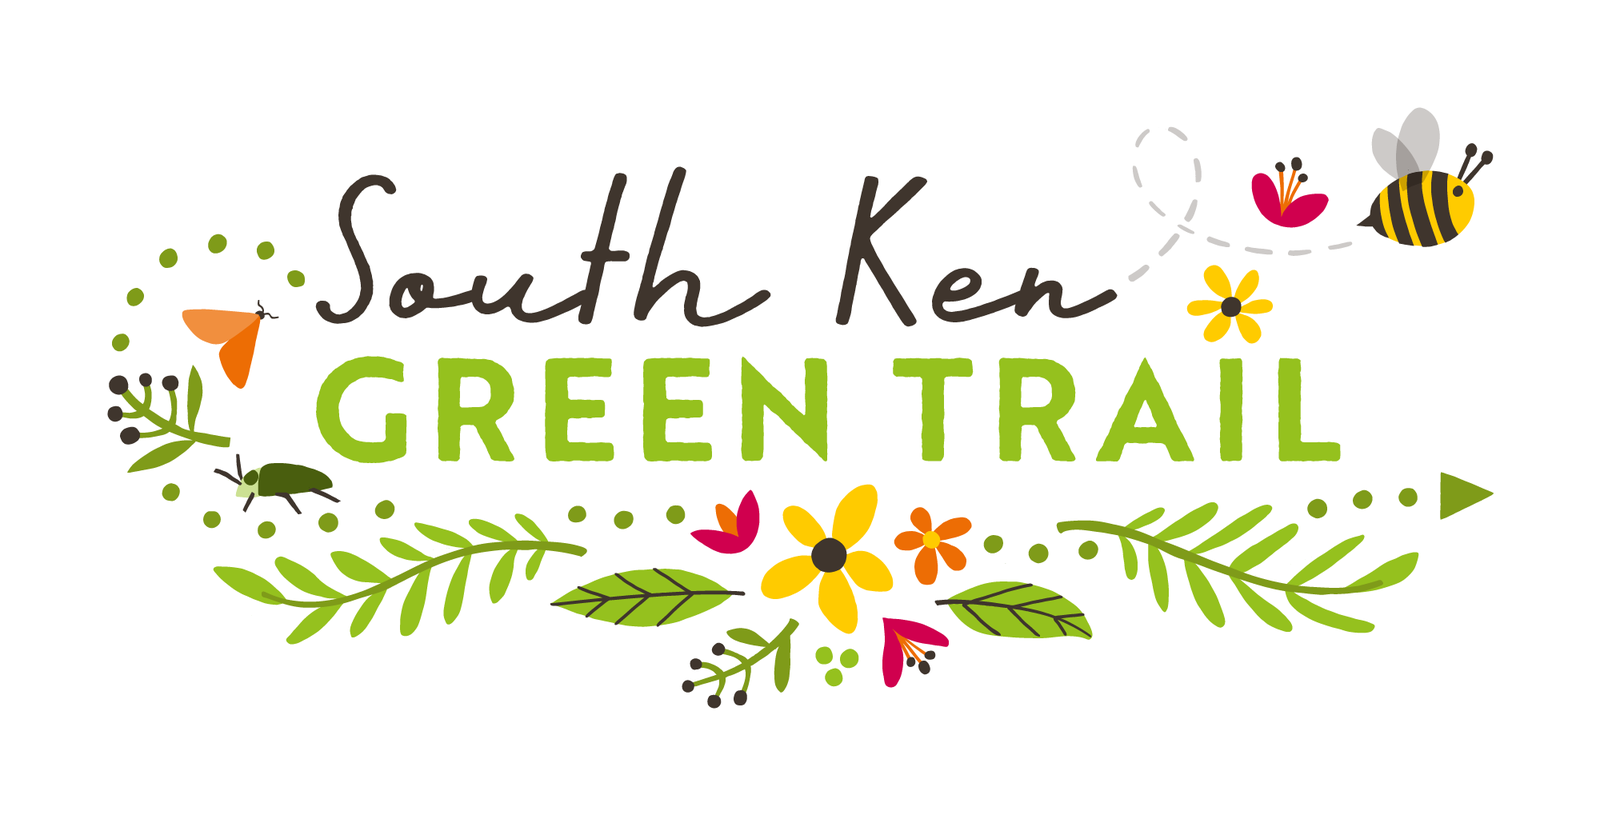 South Ken Green Trail